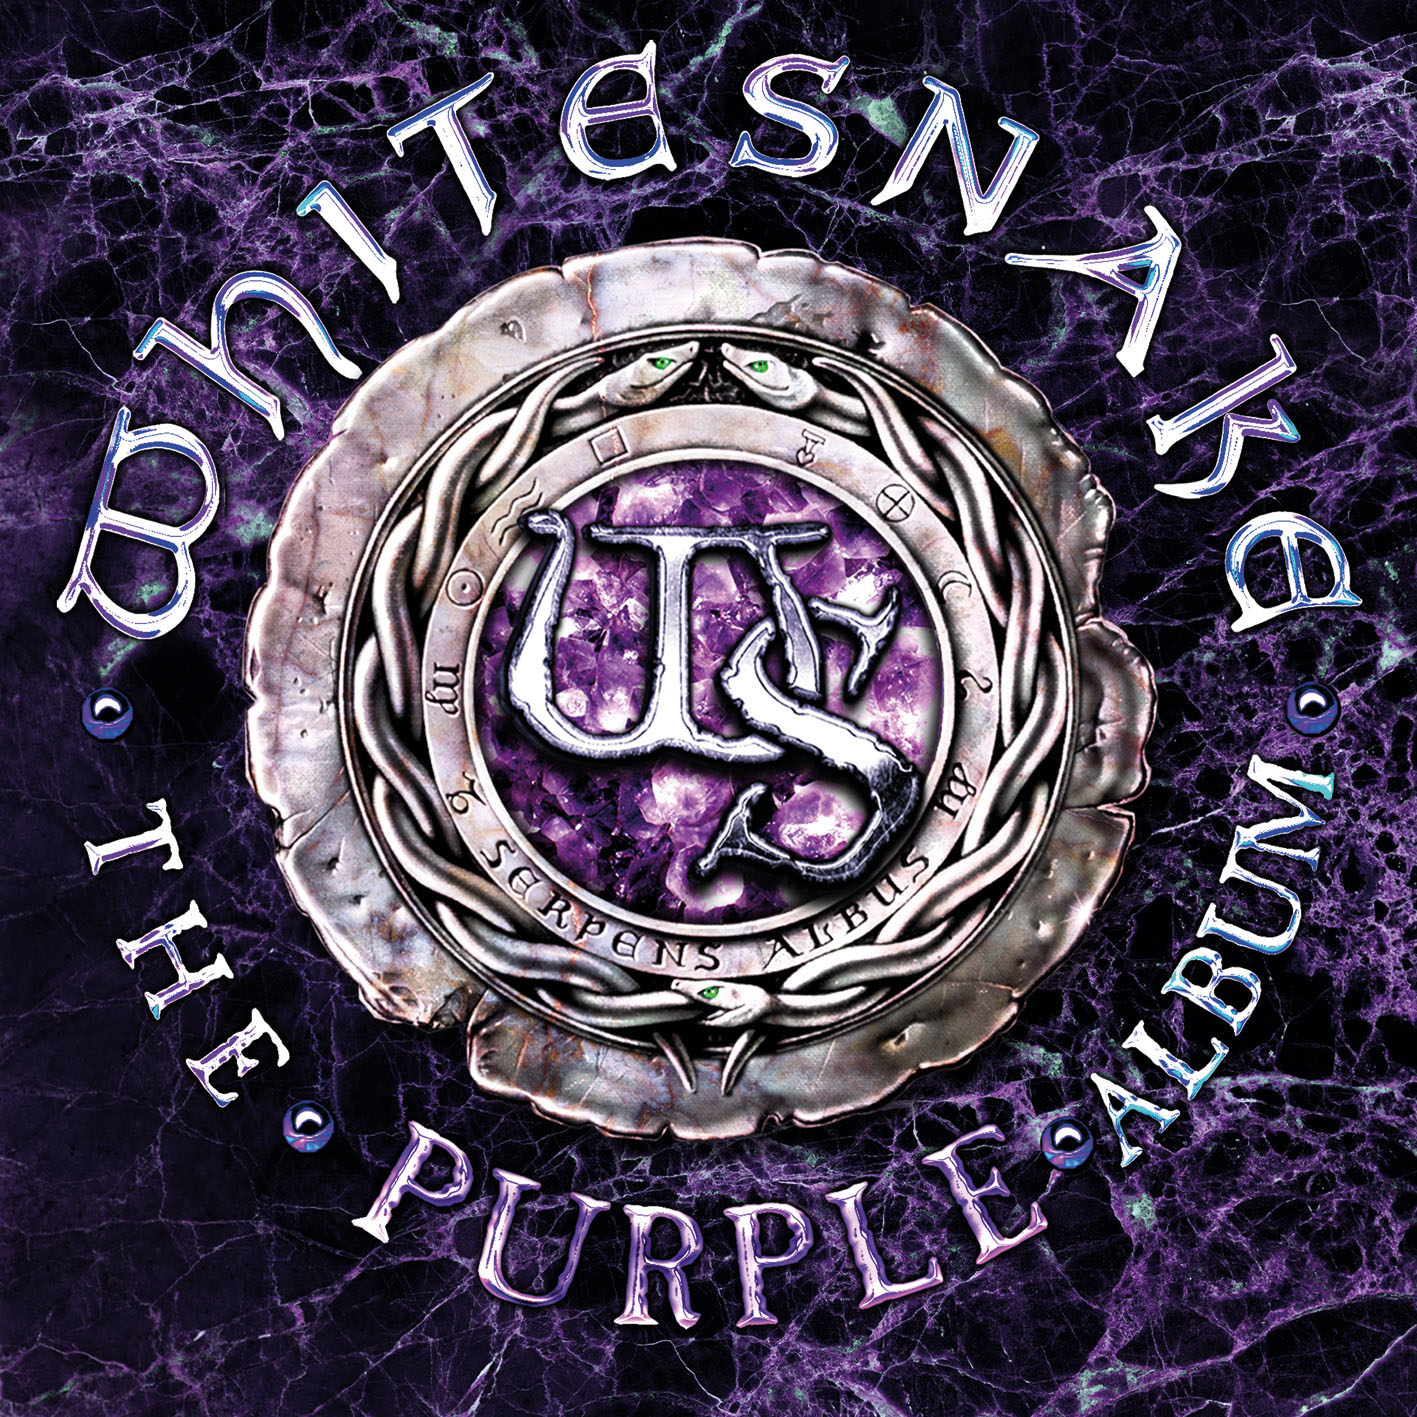 Whitesnake - The Purple Album cover